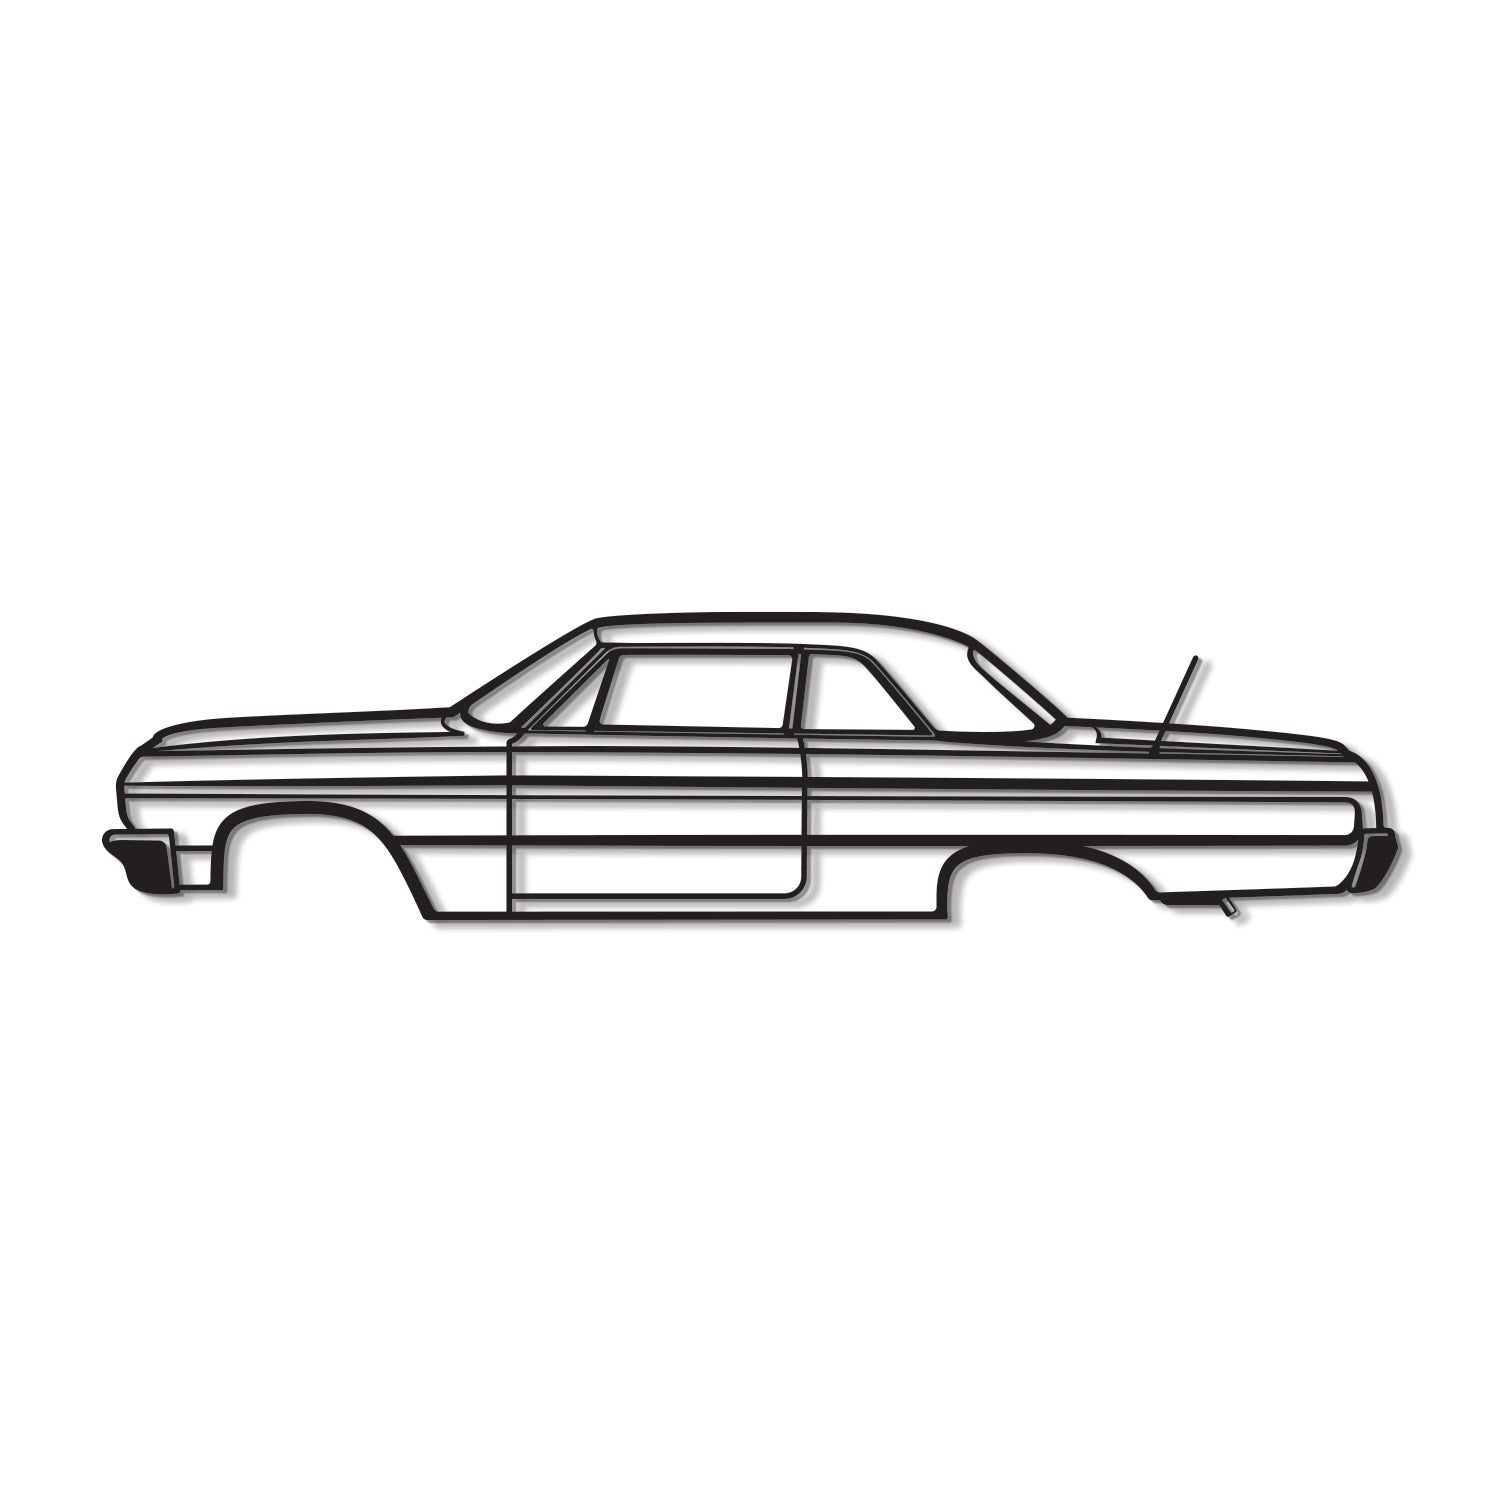 1964 Impala SS Metal Car Wall Art - MT0069